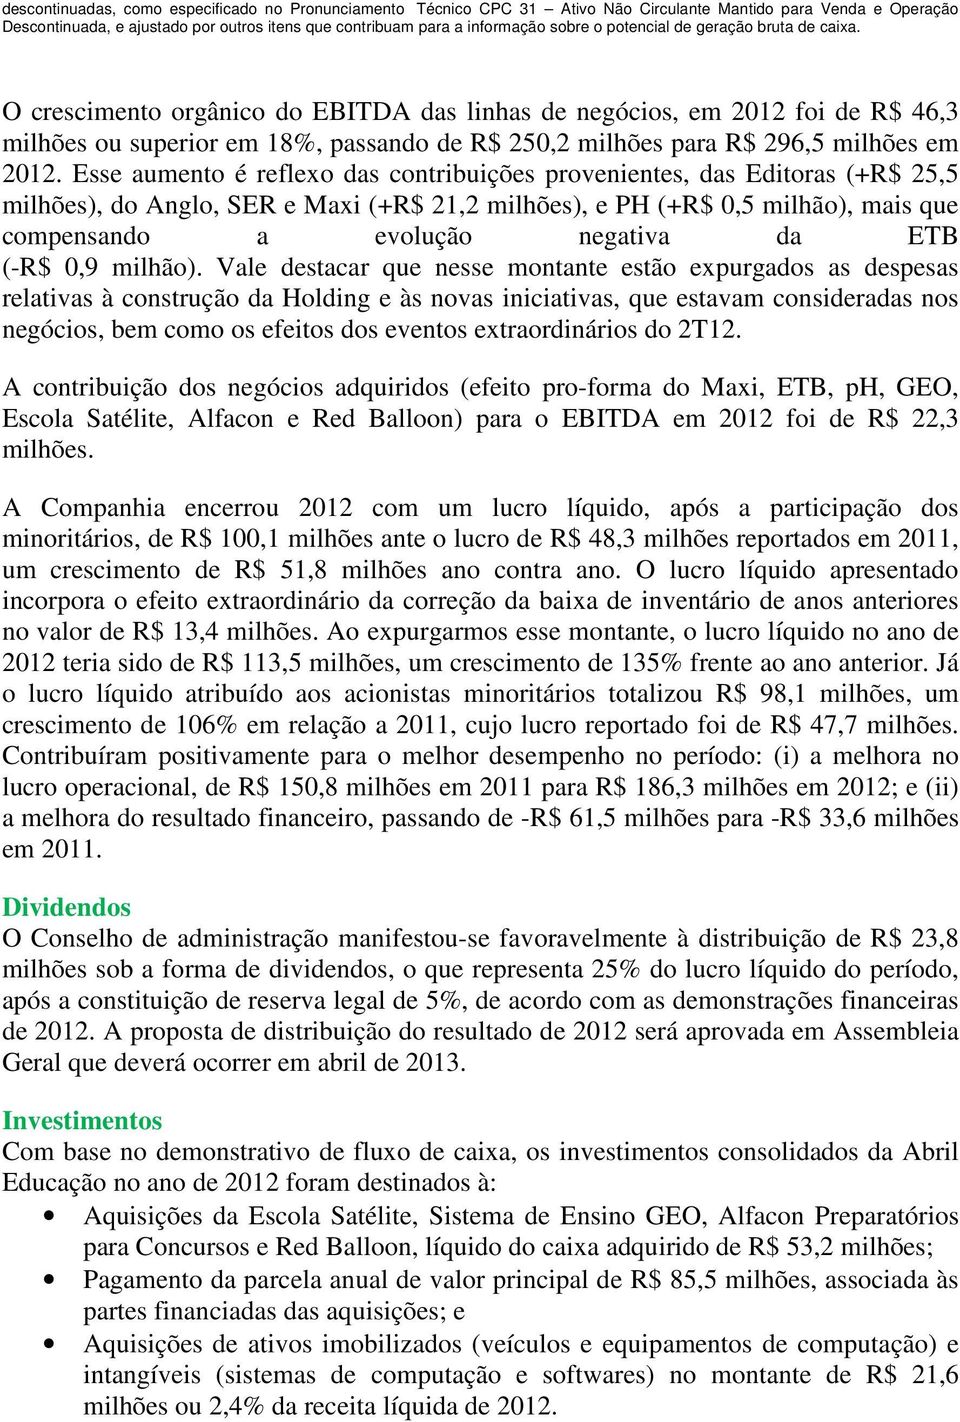 O crescimento orgânico do EBITDA das linhas de negócios, em 2012 foi de R$ 46,3 milhões ou superior em 18%, passando de R$ 250,2 milhões para R$ 296,5 milhões em 2012.